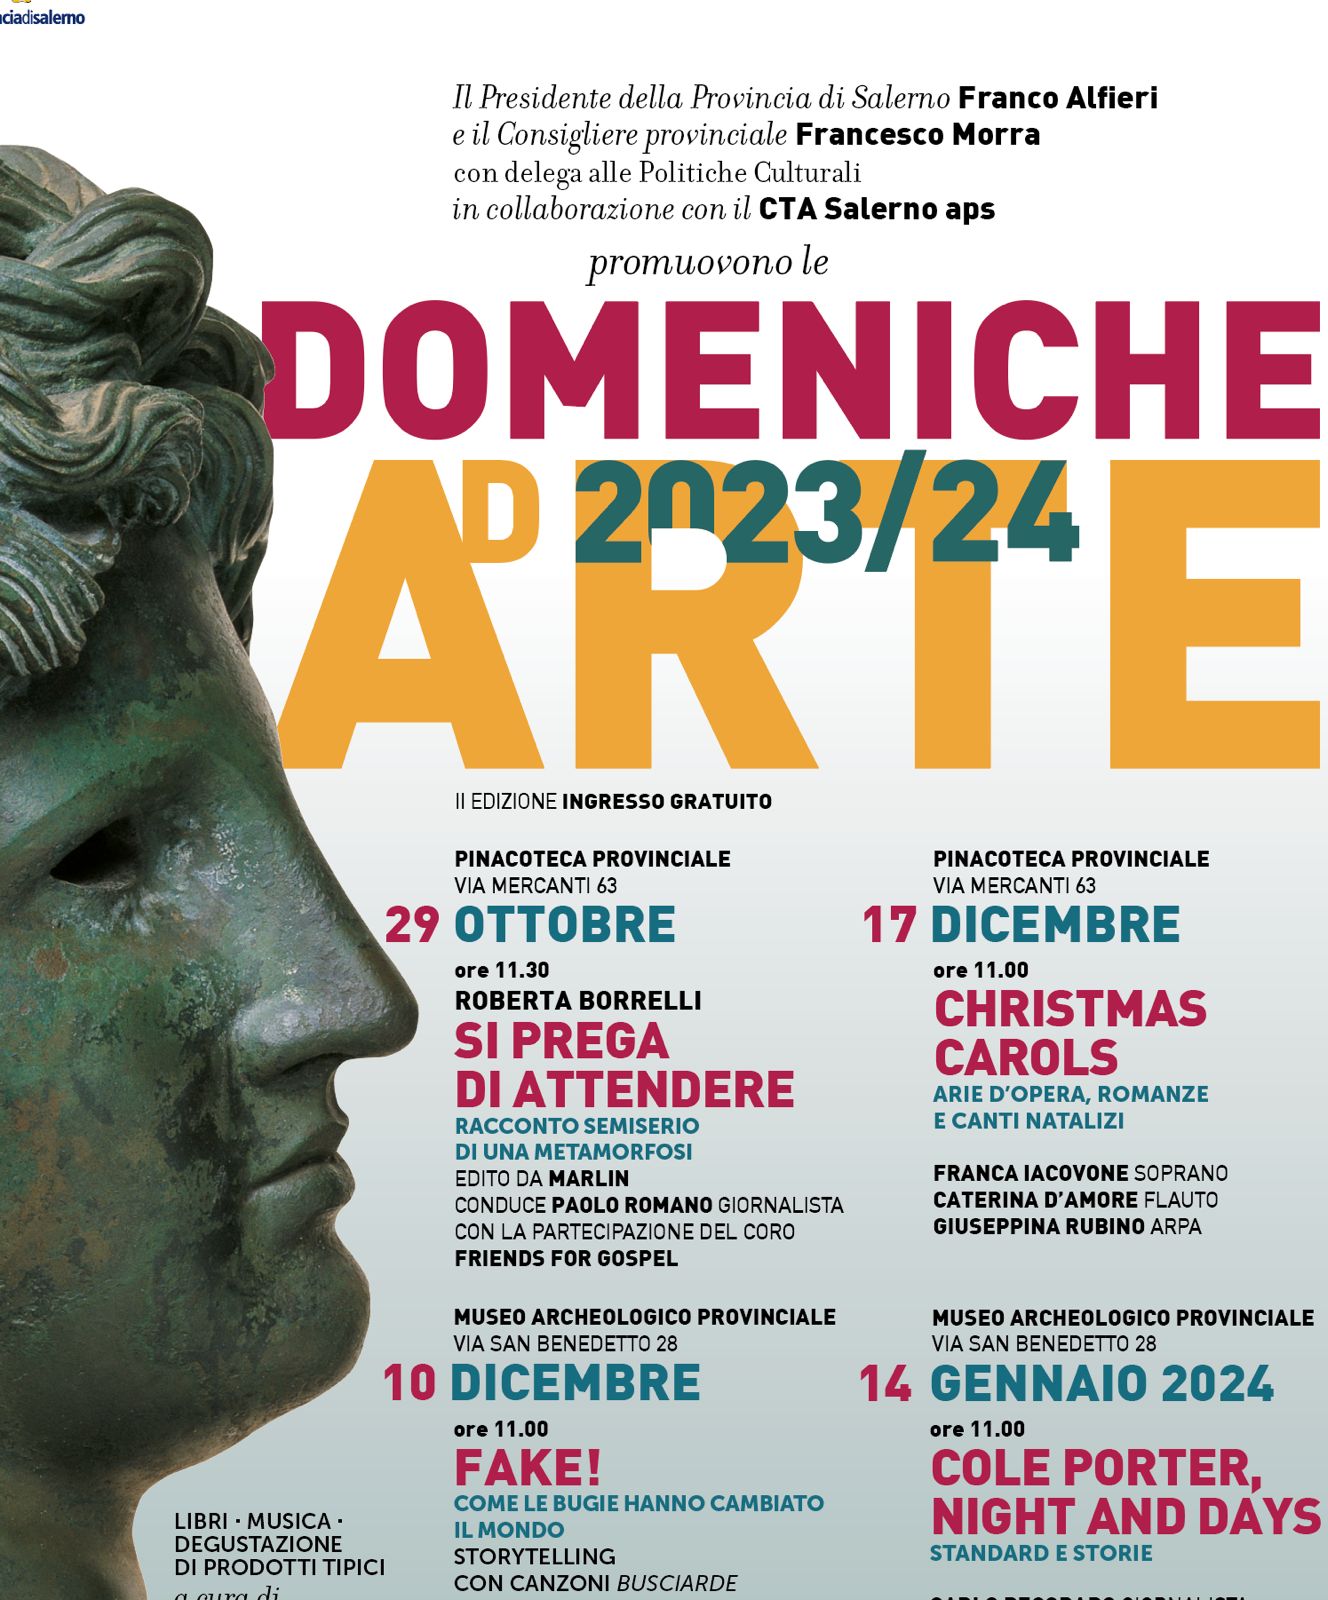 Domeniche ad Arte, il 14 gennaio al Museo archeologico provinciale di  Salerno il primo appuntamento - Ildenaro.it